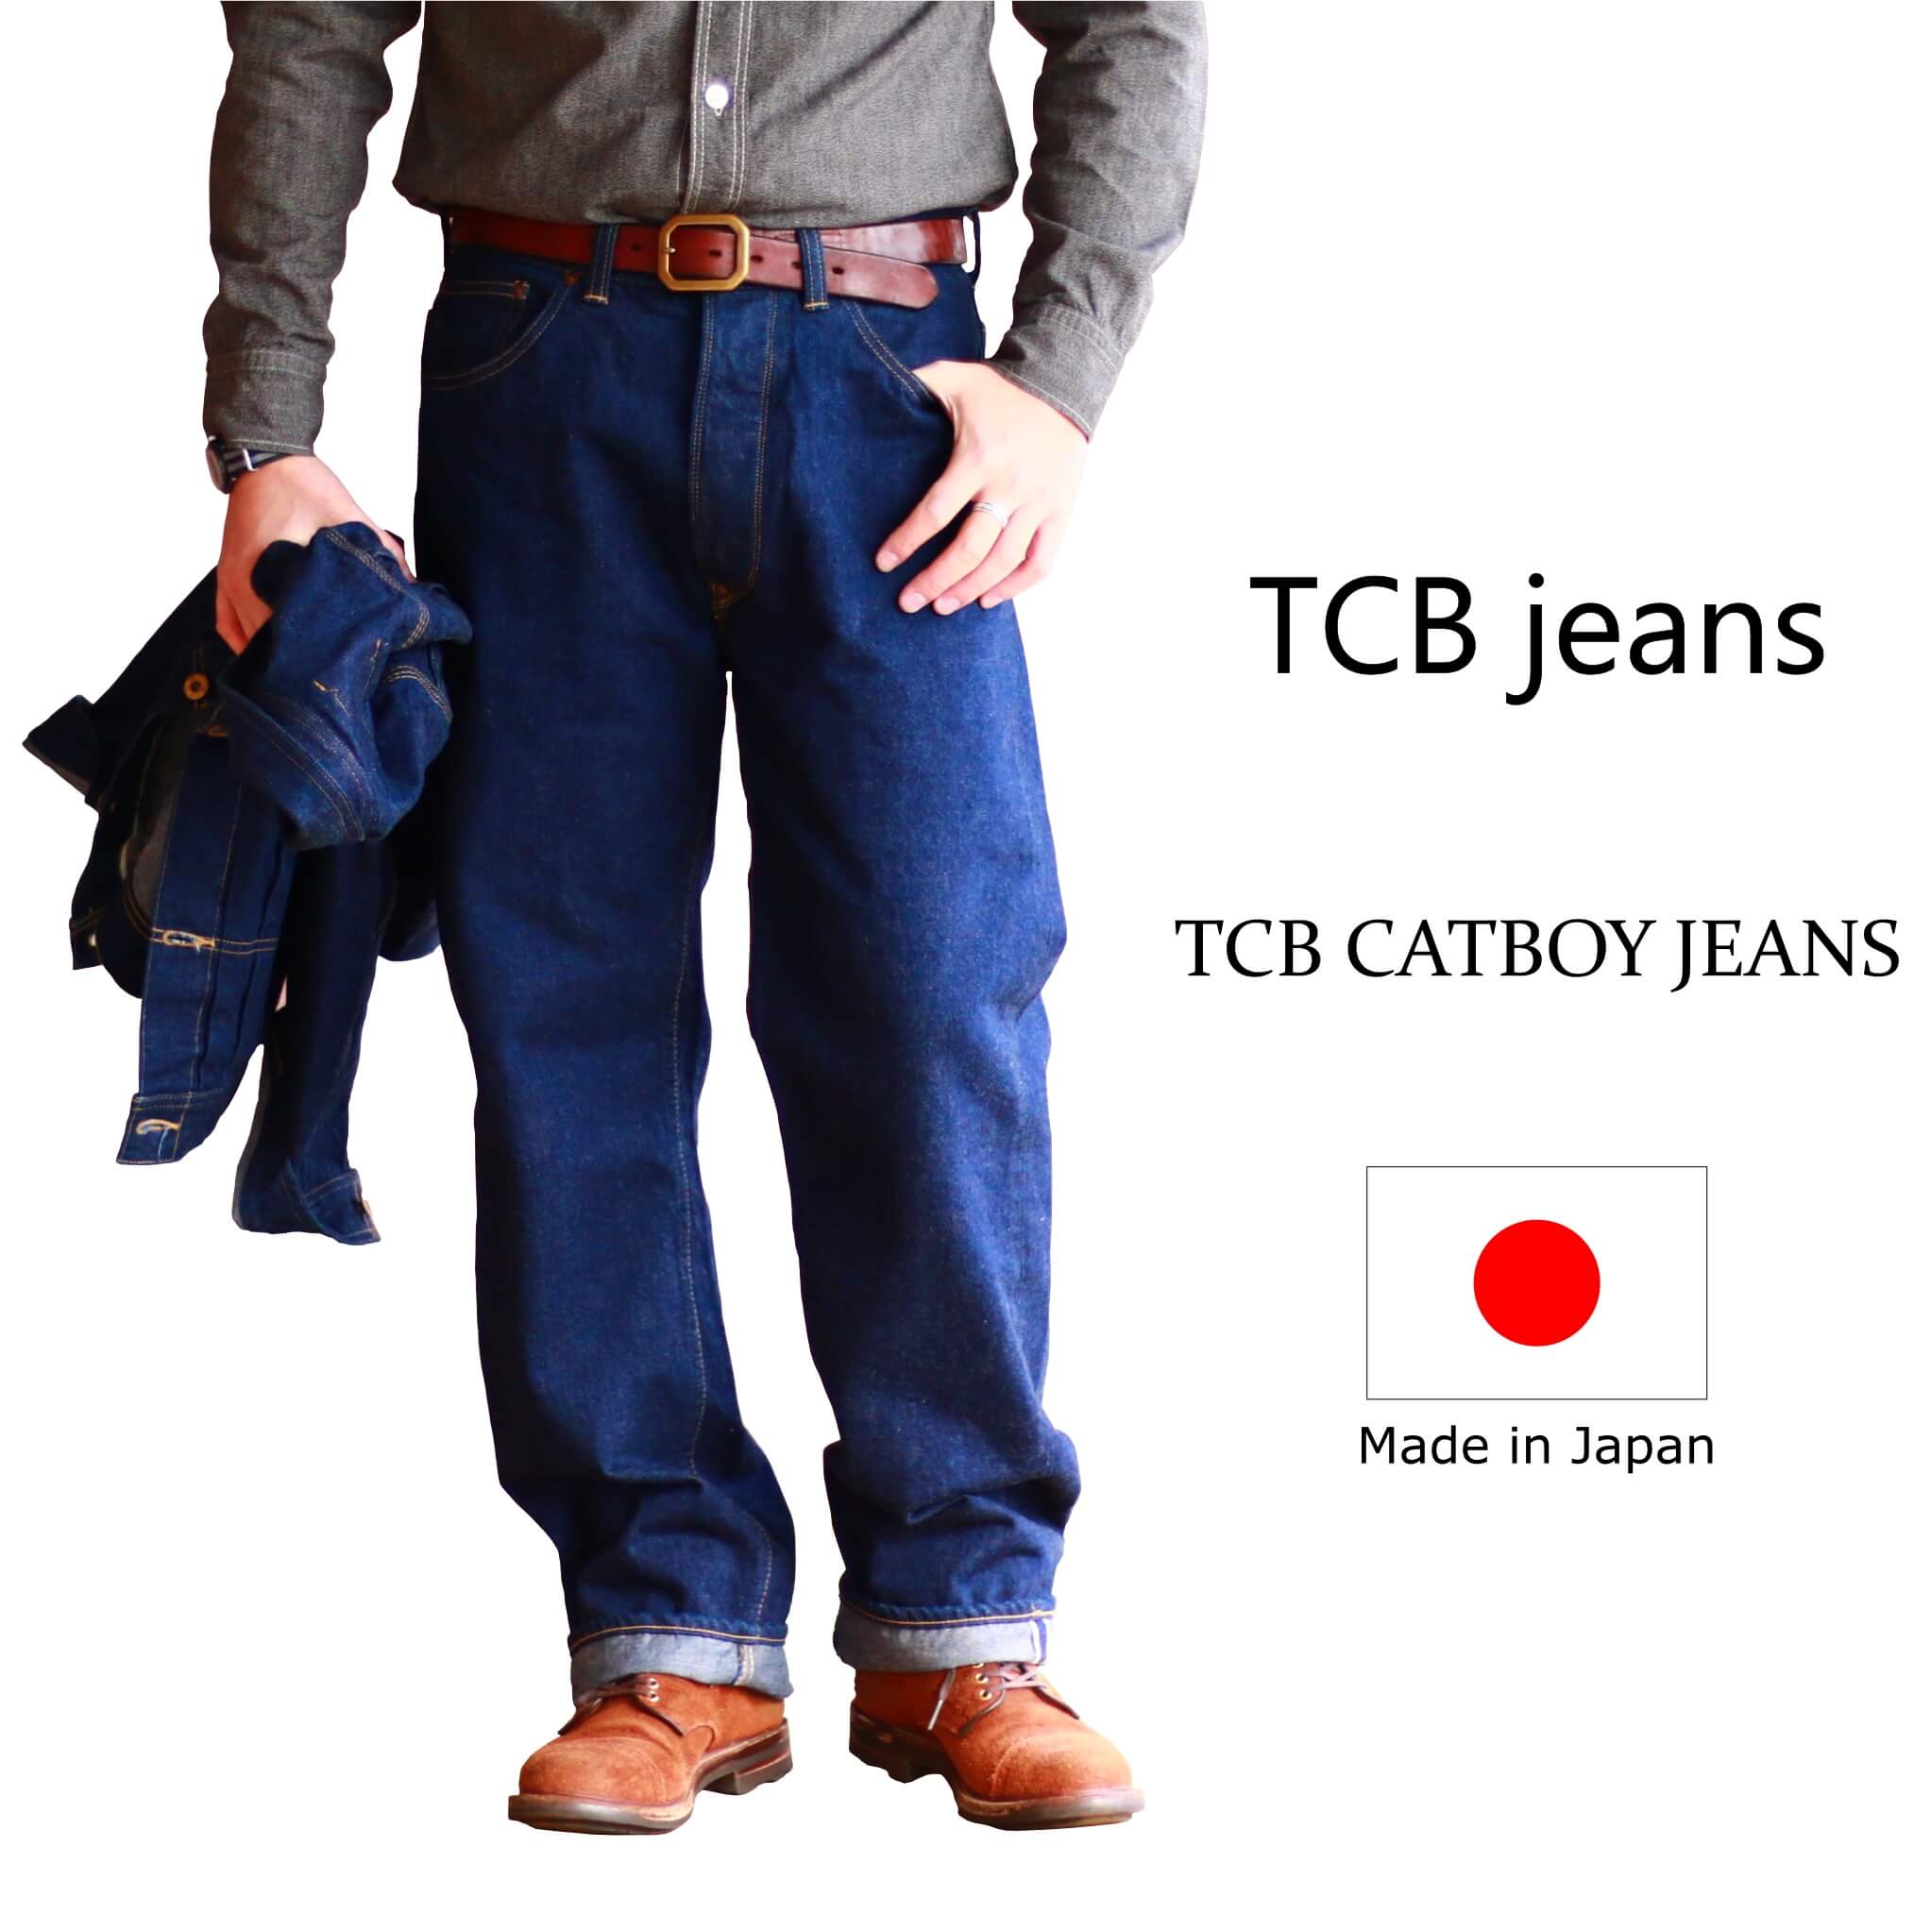 TCB jeans TCBジーンズ TCB CATBOY JEANS キャットボーイジーンズ